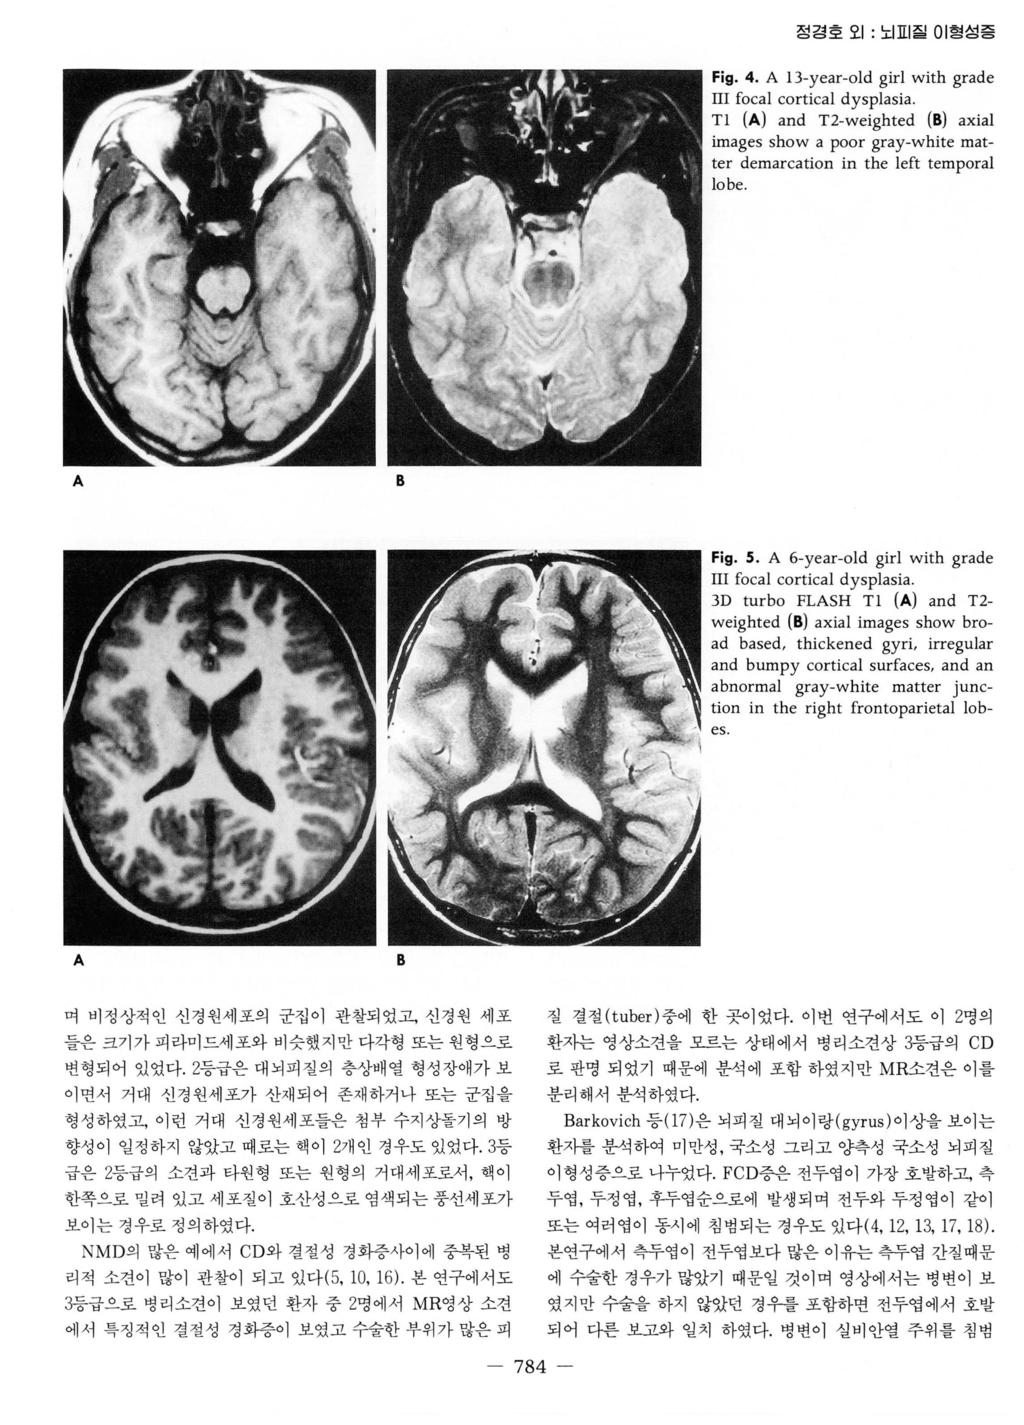 정경호오 1: 노 표 질이형성증 Fig. 4. A 13-year- 이 d girl with grade m focal cortical dysplasia. Tl (A) and T2-weighted (8) axial images show a poor gray-white matter demarcation in the left temporal lobe.